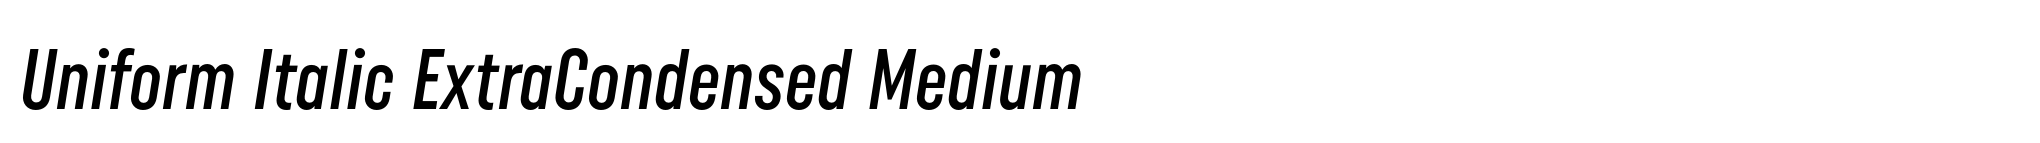 Uniform Italic ExtraCondensed Medium image